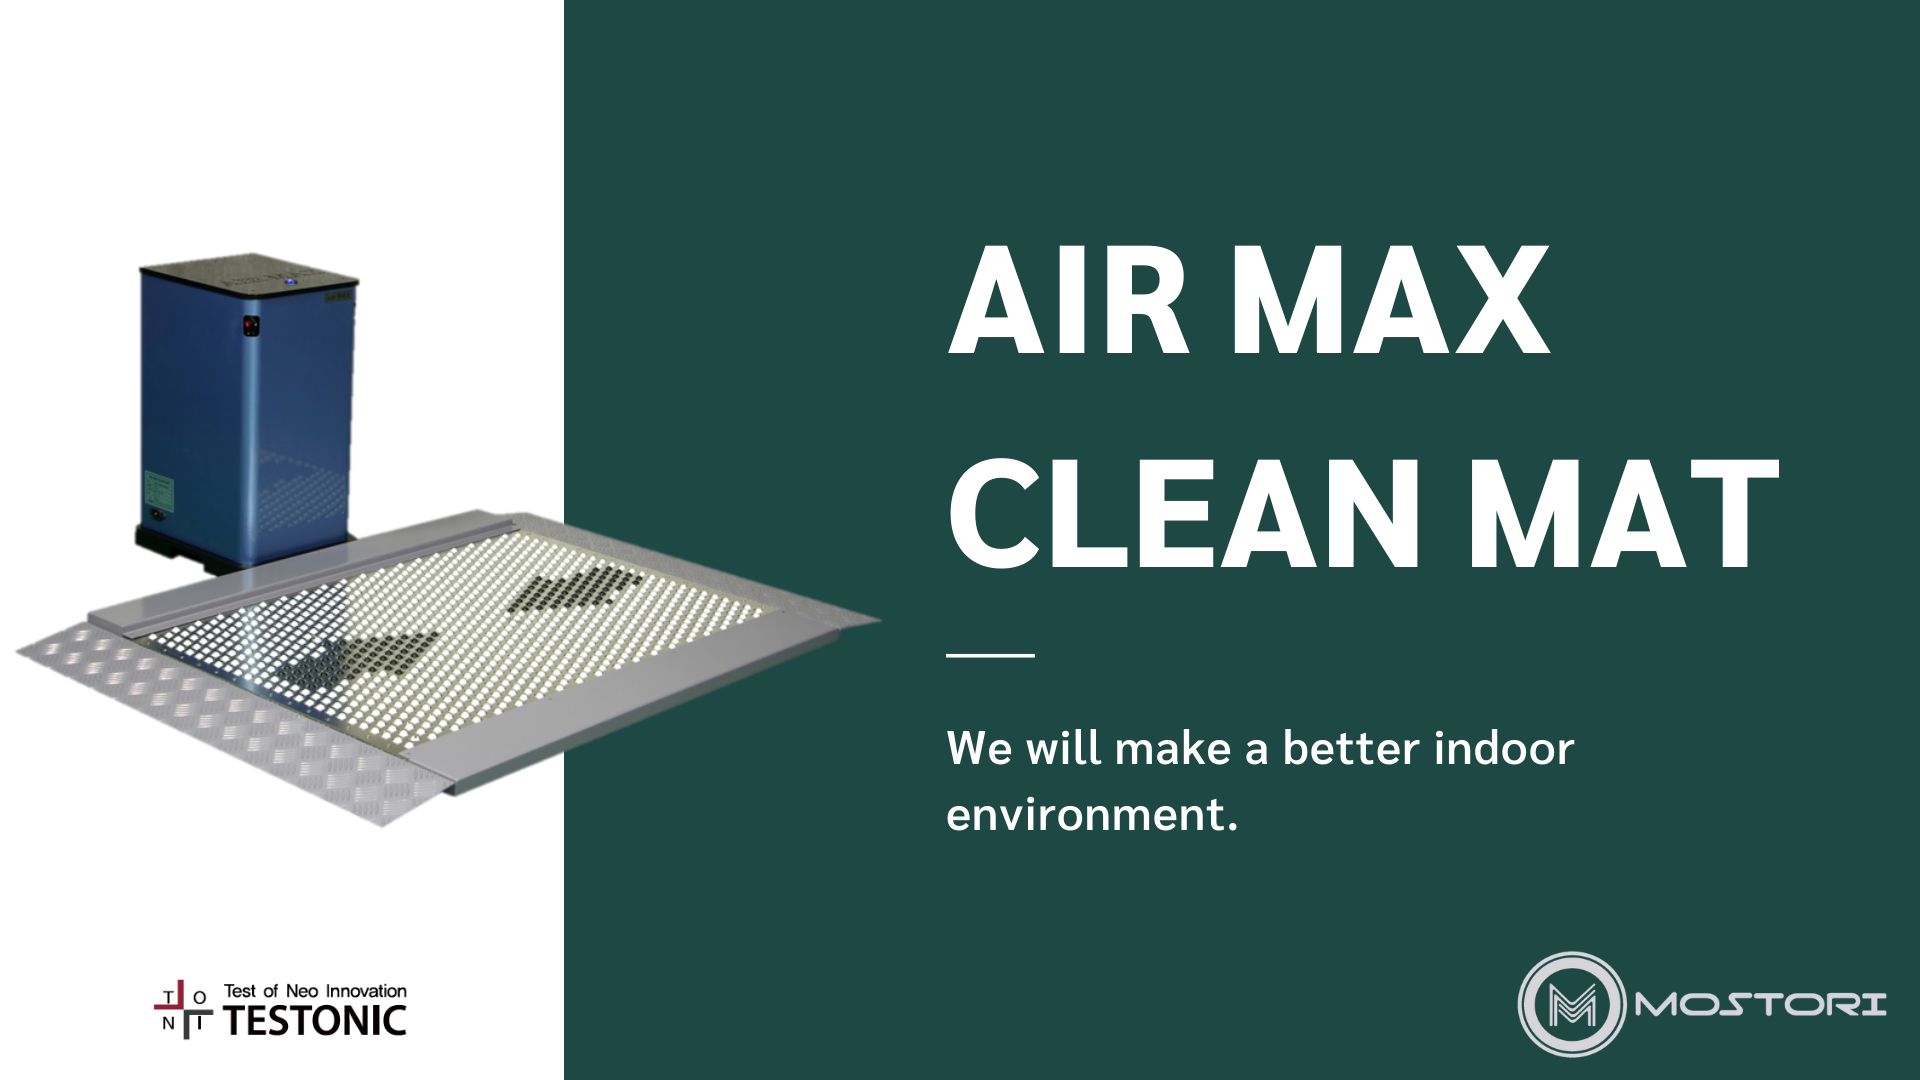 AIR MAX CLEAN MAT